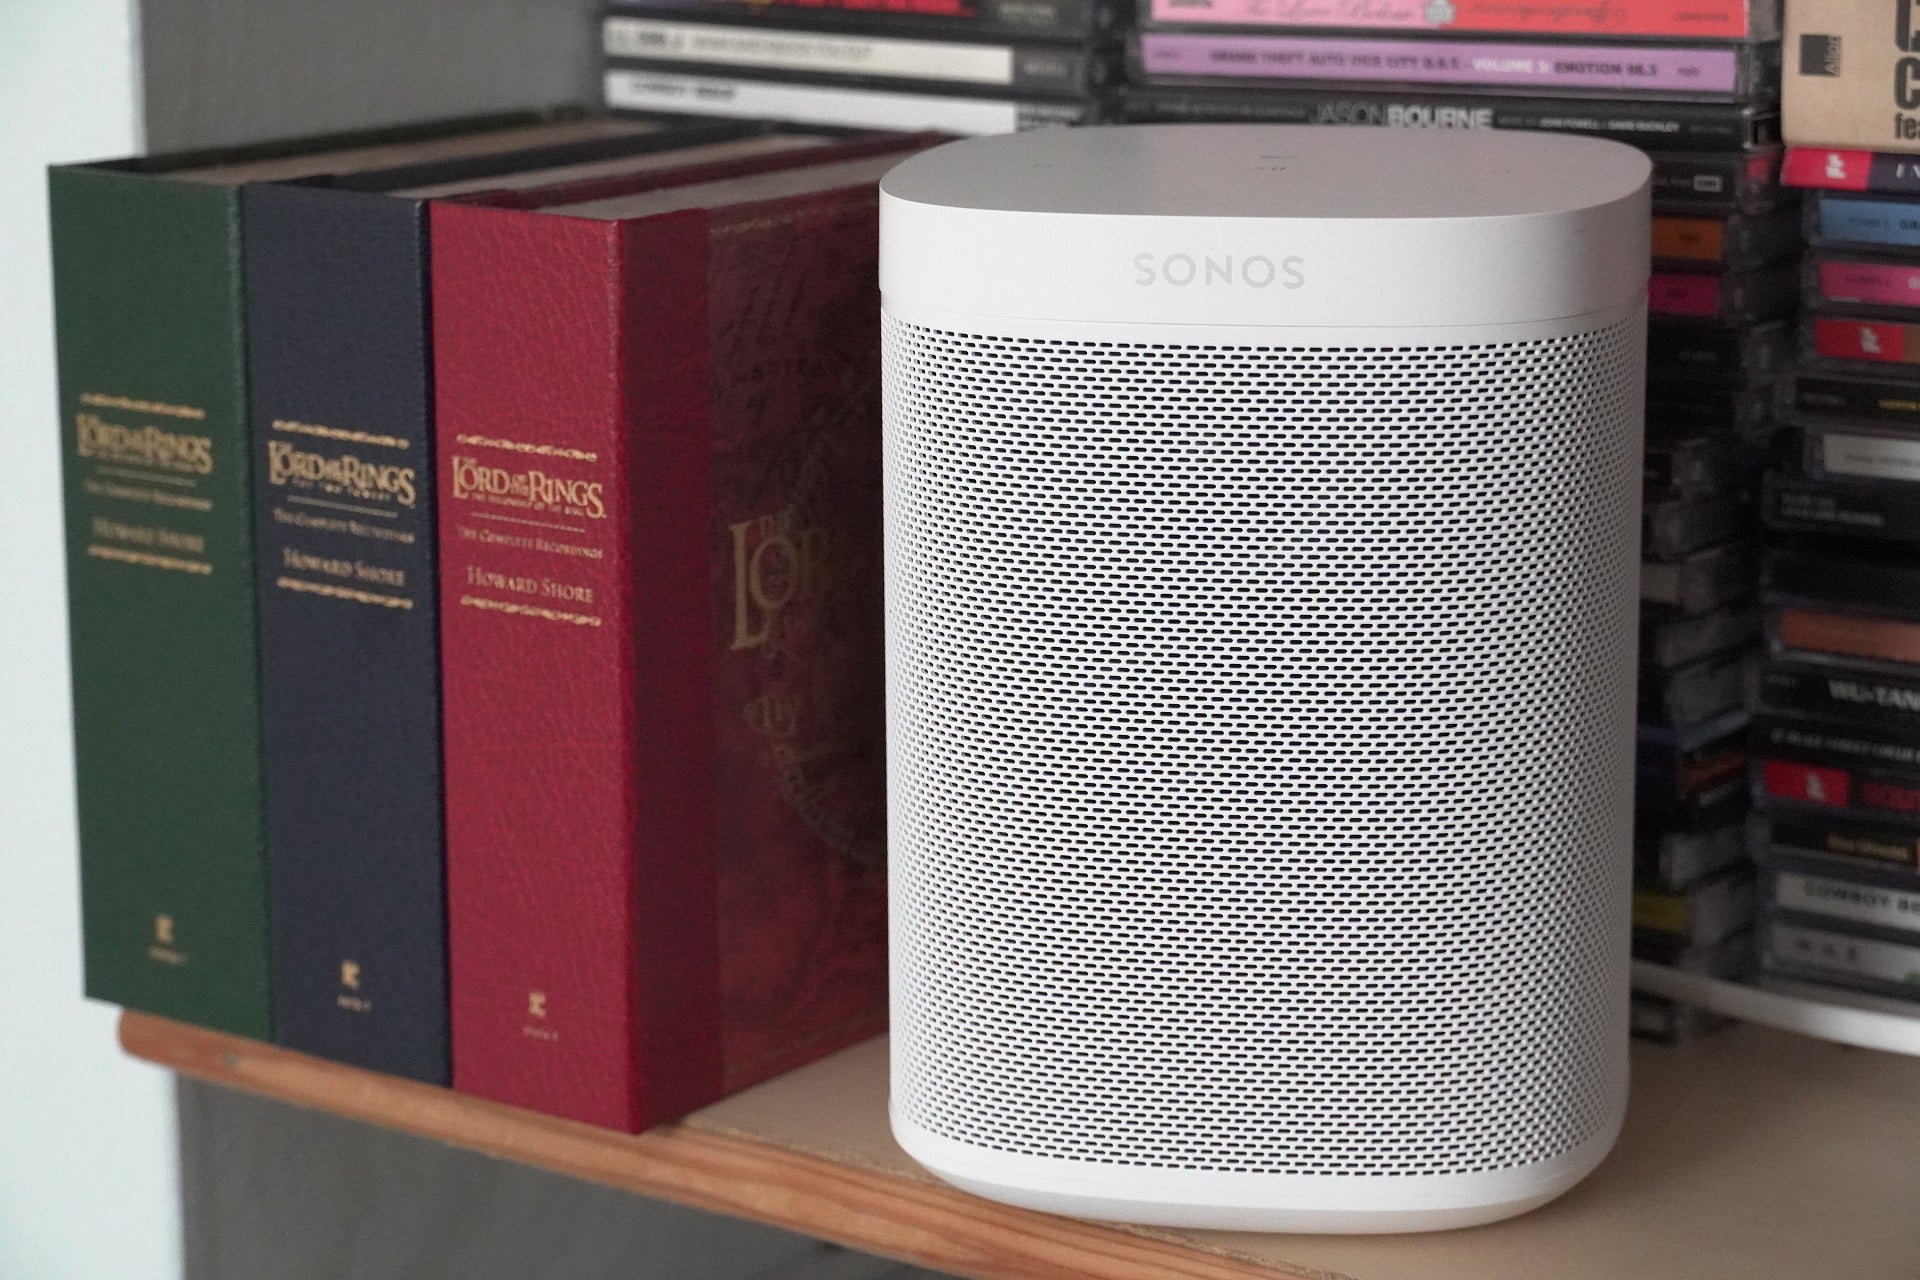 Sonos SL review: sound from a versatile wireless speaker